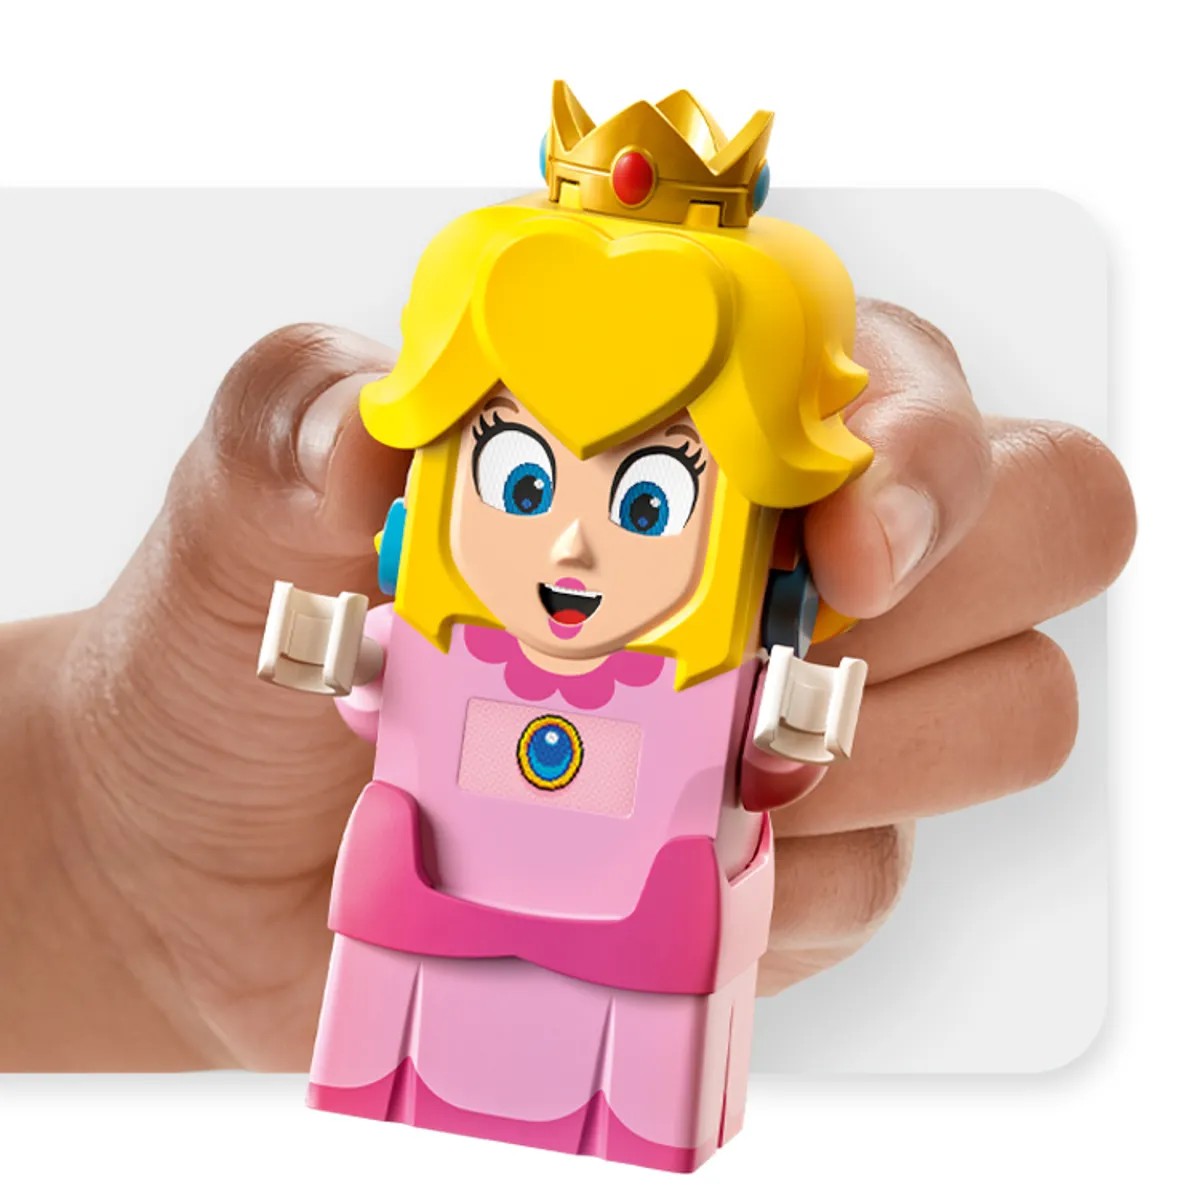 LEGO Super Mario Bros: La Princesa Peach, su castillo y más personajes llegan el 1 de agosto 1